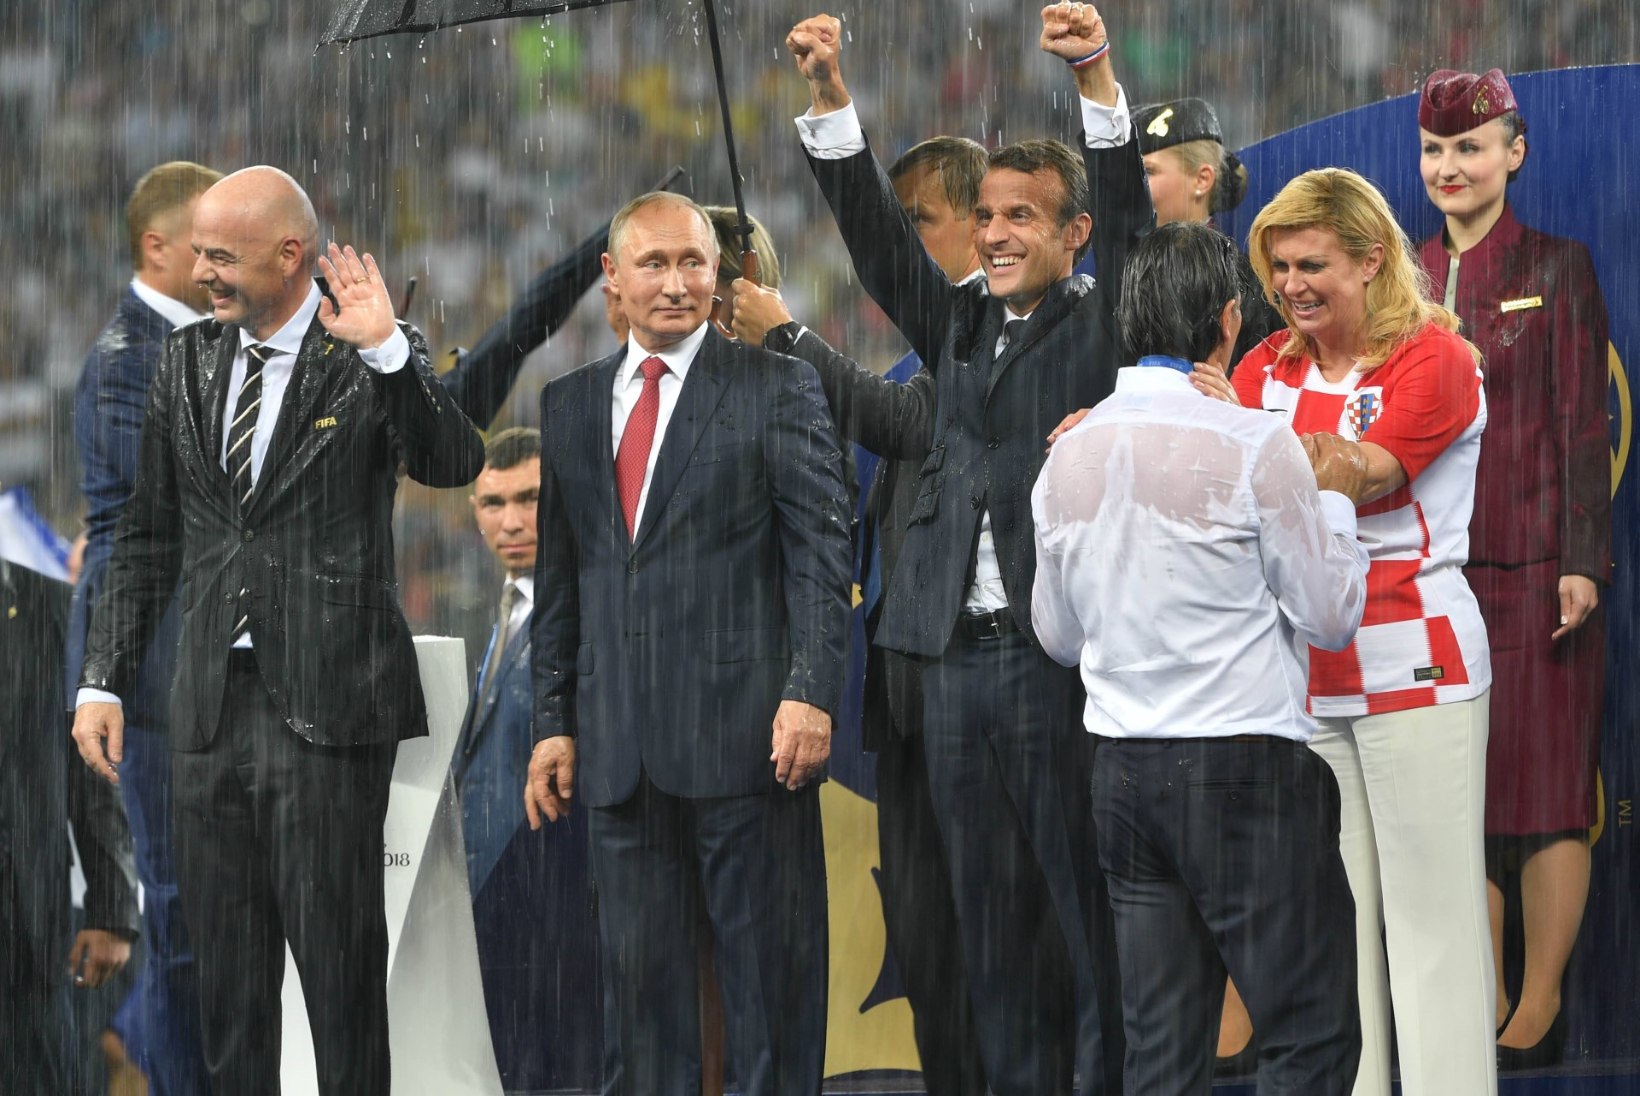 FOTOD | MM-finaali väärtuslikuim mees? President Putini vihmavarjuhoidja!